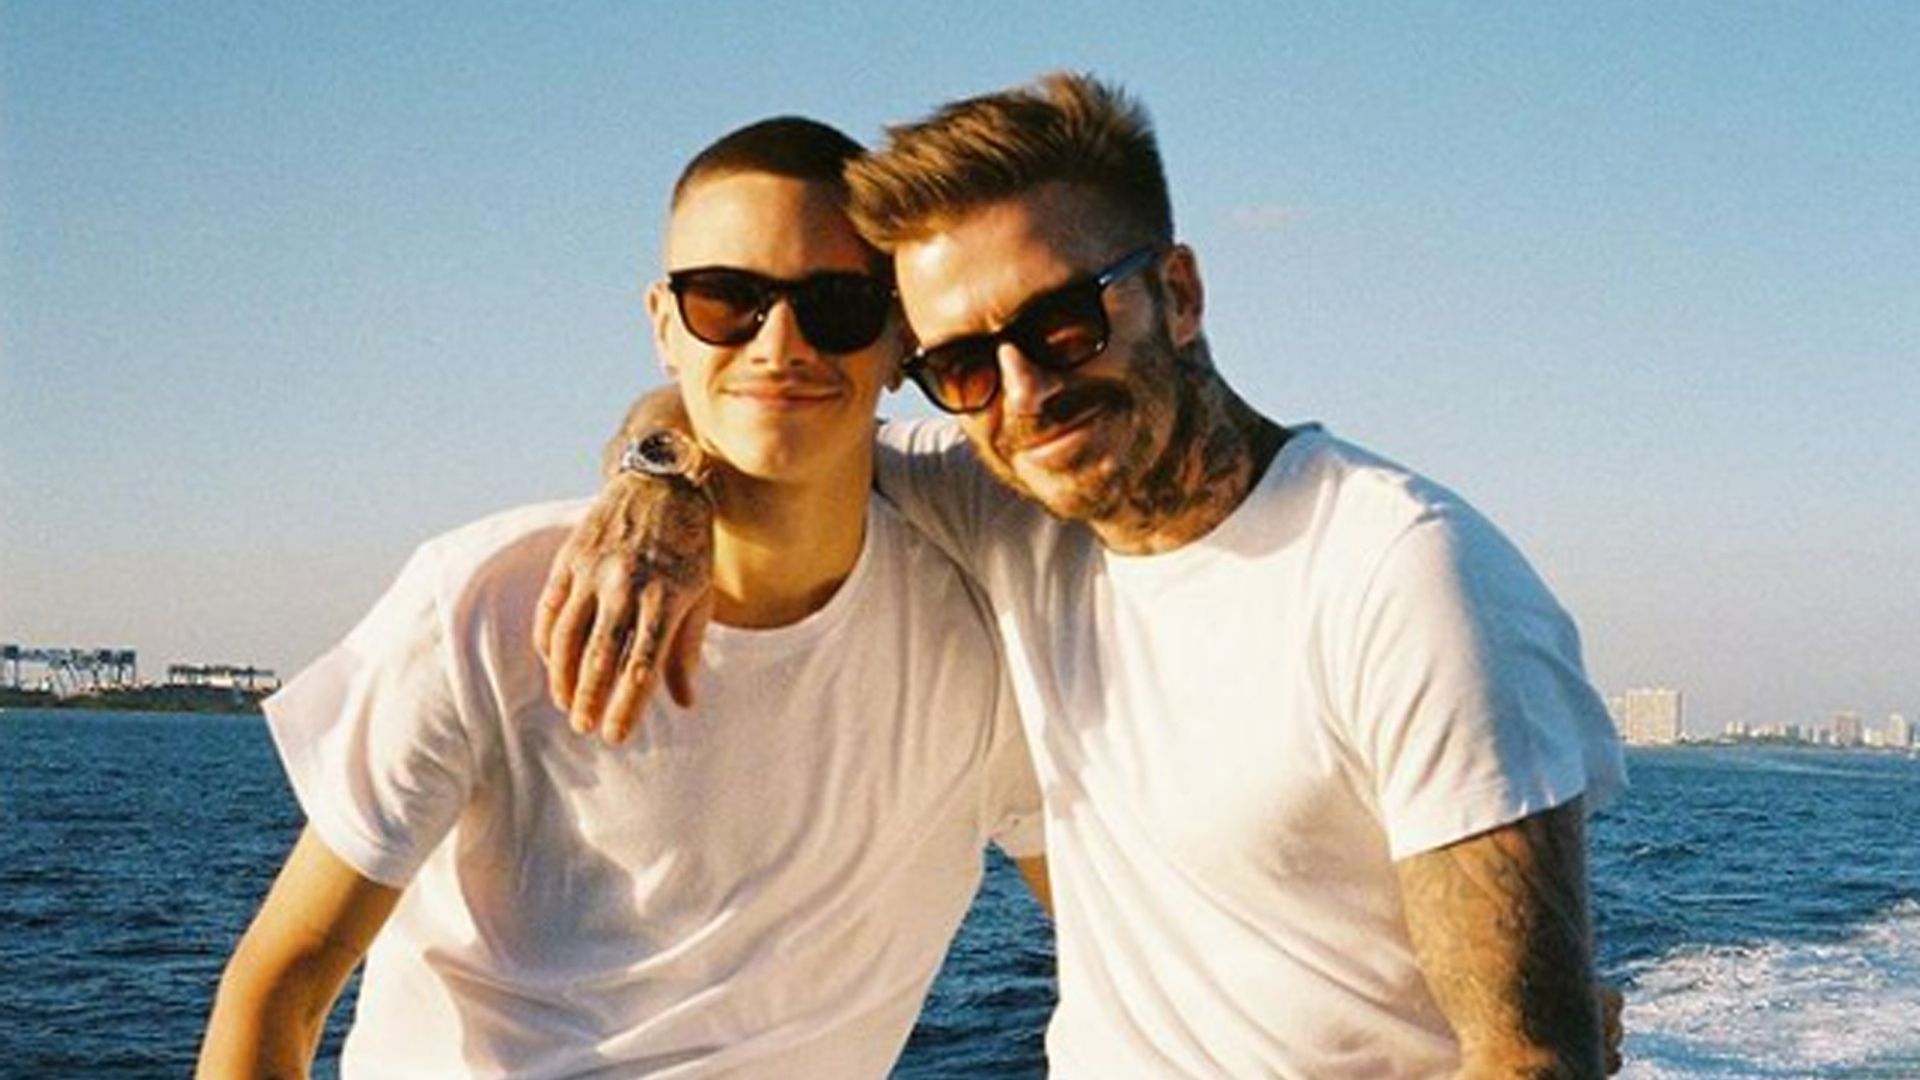 Romeo Beckham divides fans as he shares unseen family photo – David Beckham reacts